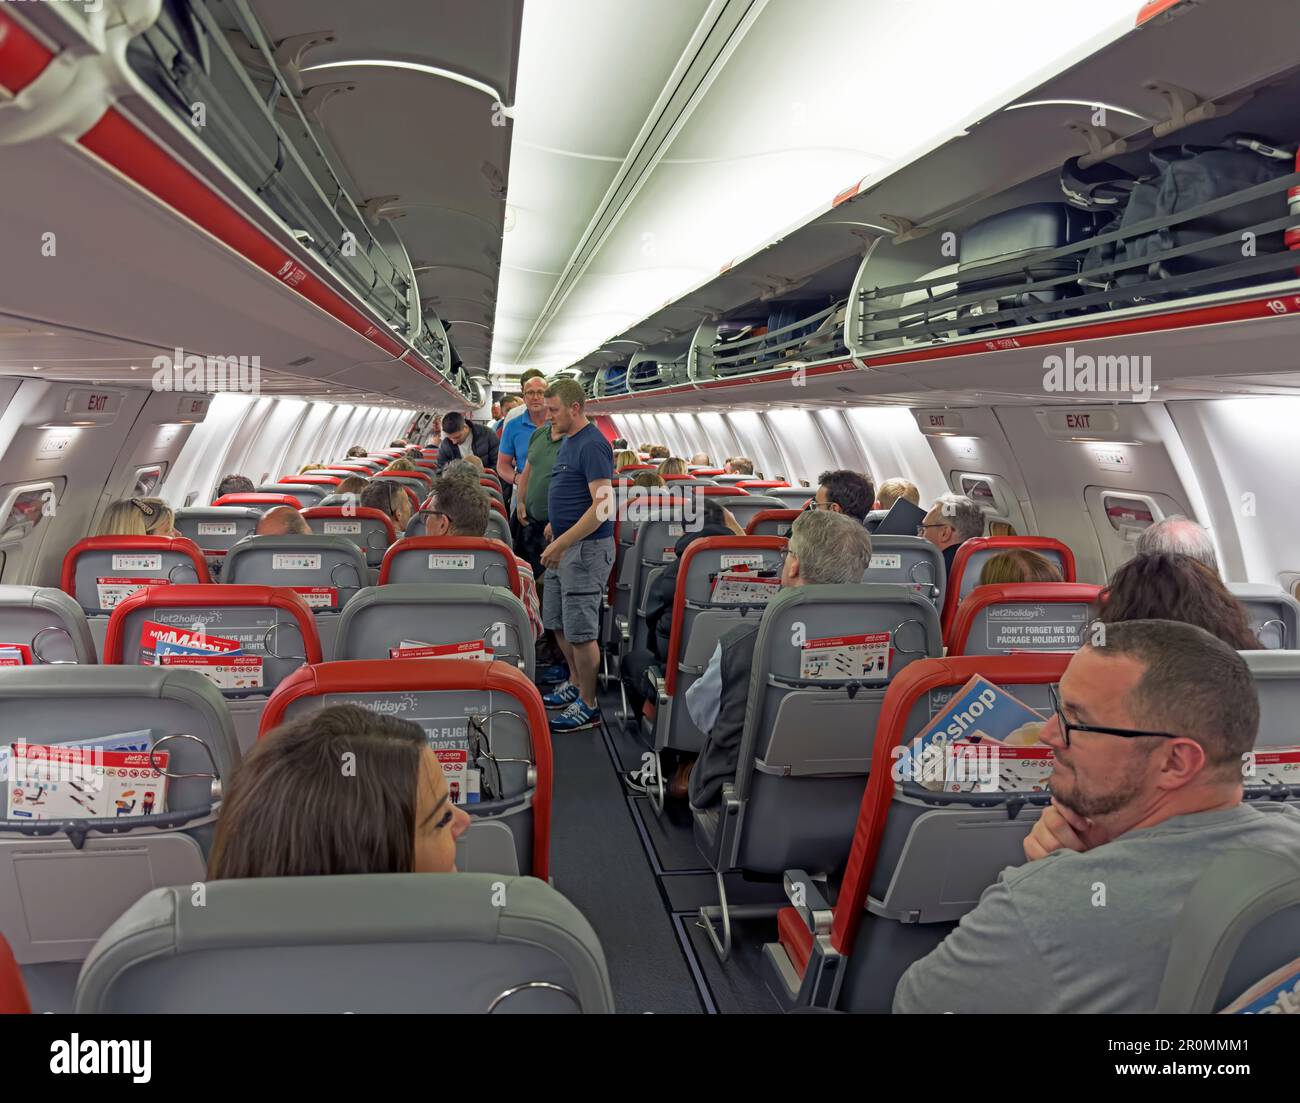 Jet2 cabine aérienne, avant le décollage, montrant les bagages de cabine dans les casiers aériens, Boeing G-JZHN 737-8mg Banque D'Images